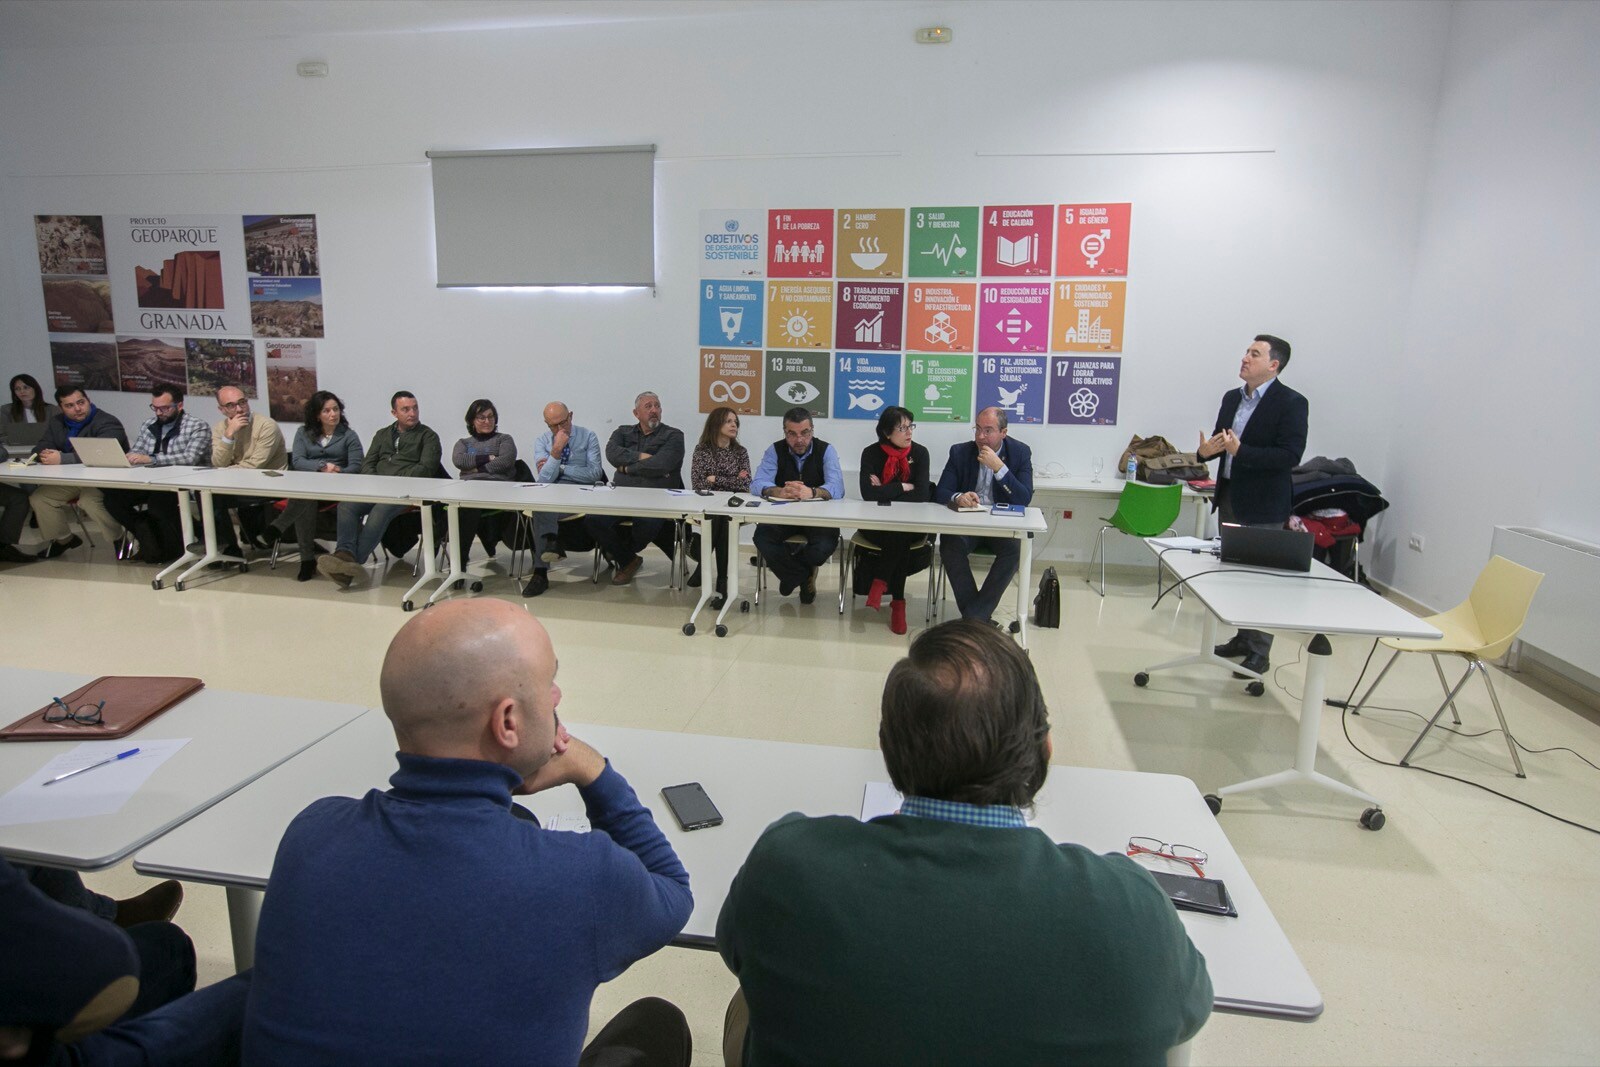 La jornada ha reunido a un nutrido y participativo grupo de empresarios de la comarca de Guadix, que han planteado preguntas y escuchado con atención las claves sobre desarrollo sostenible y energías renovables